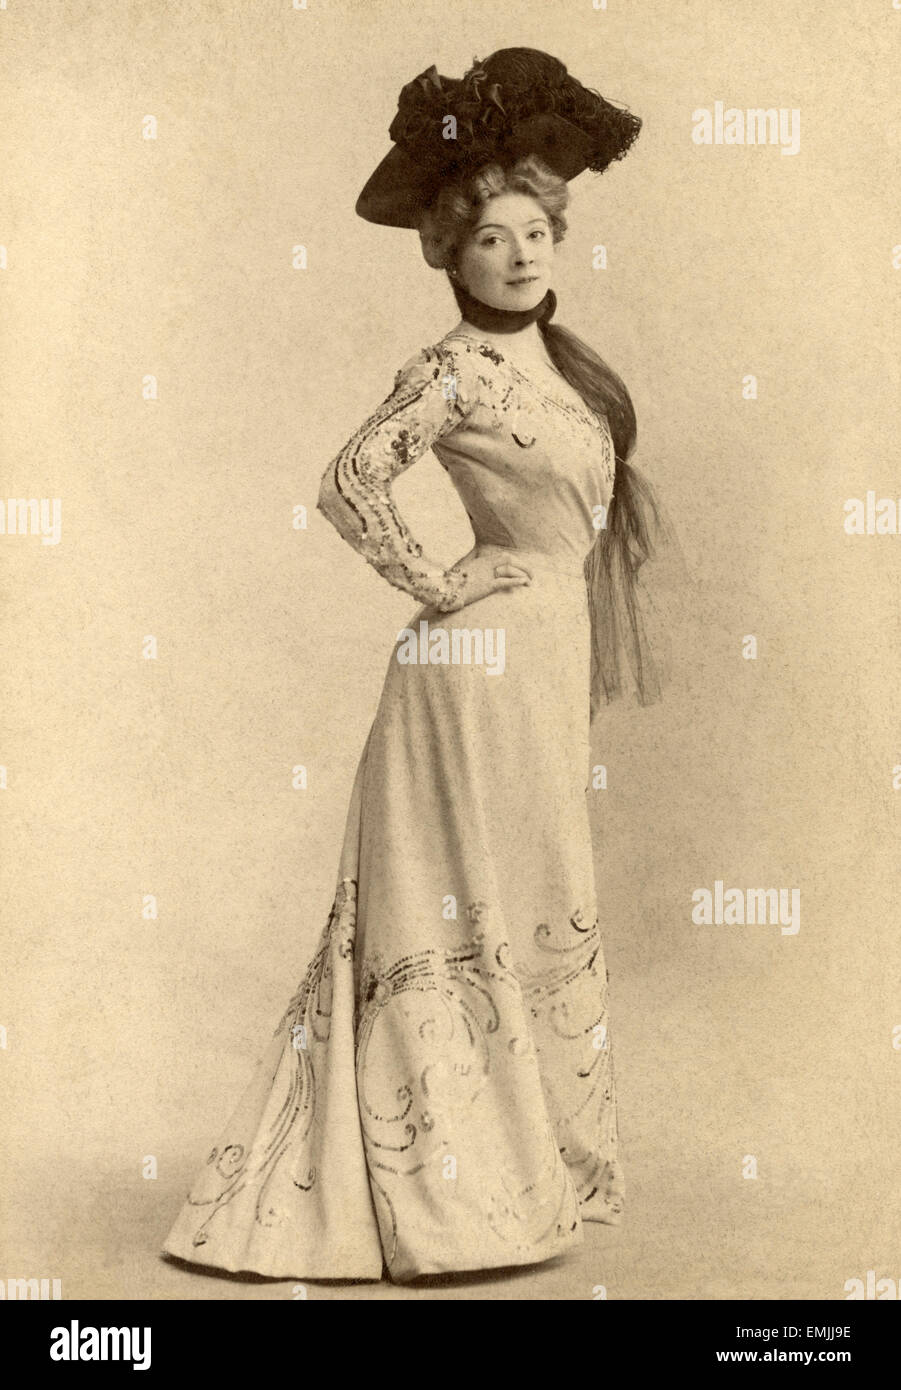 L'actrice française Amélie Dieterle, Portrait, Reutllnger, Paris, France, vers 1898 Banque D'Images